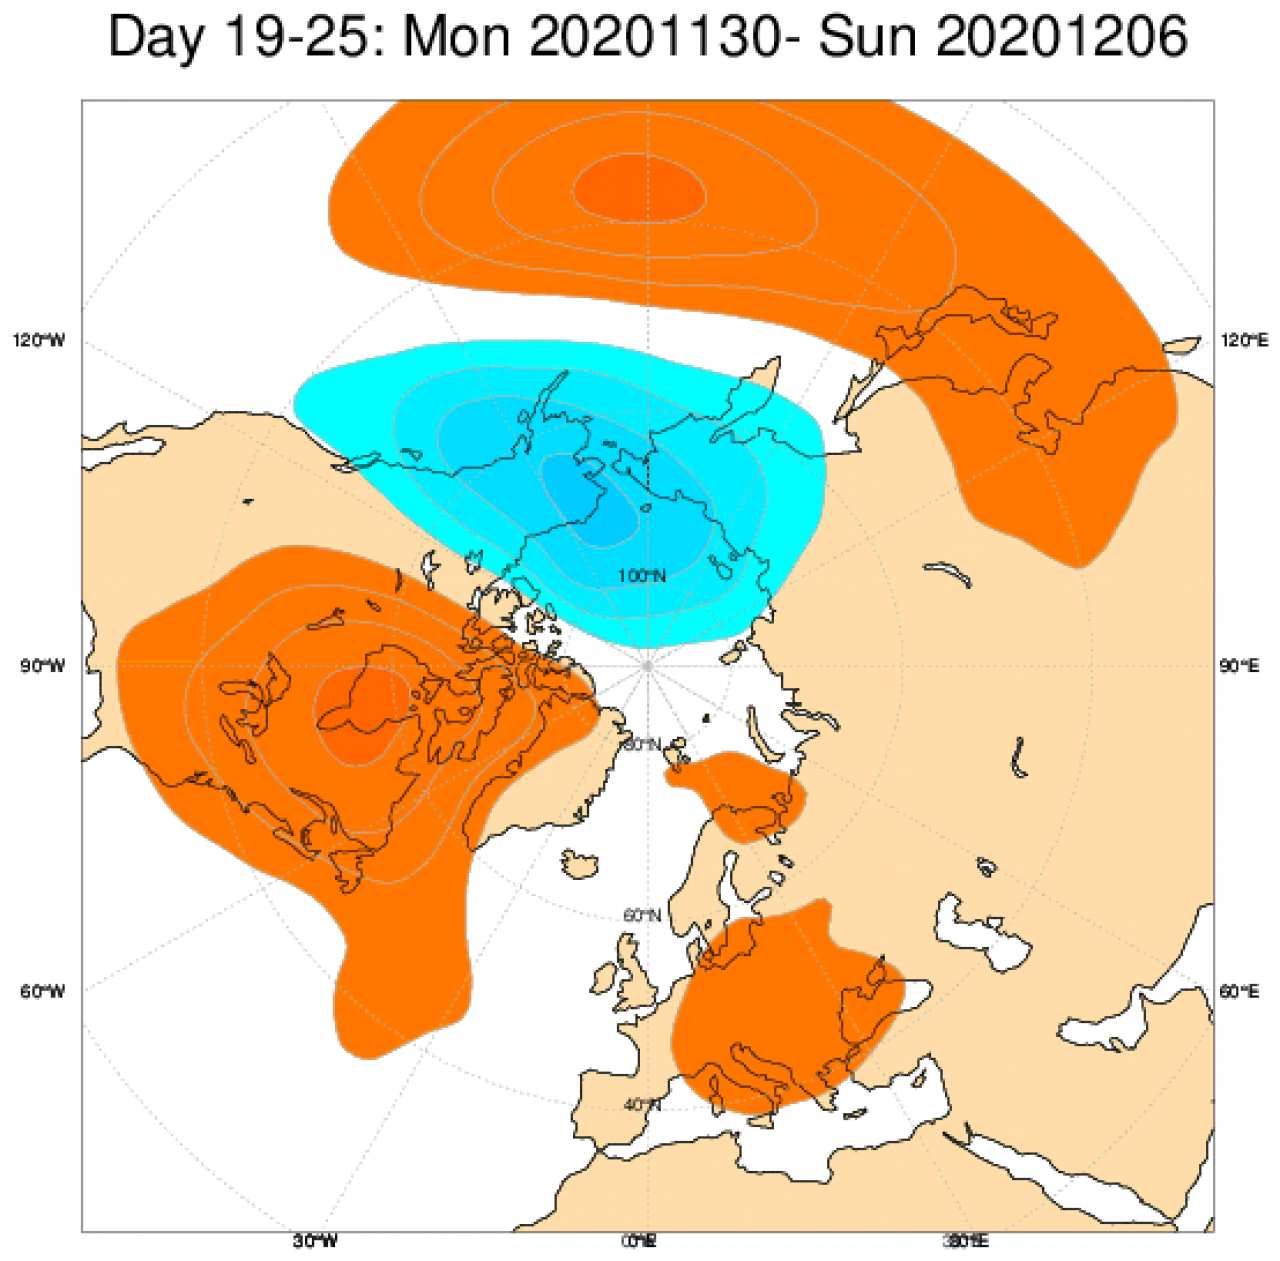 Le anomalie di geopotenziale secondo il modello ECMWF in Europa, mediate nel periodo 30 novembre - 6 dicembre